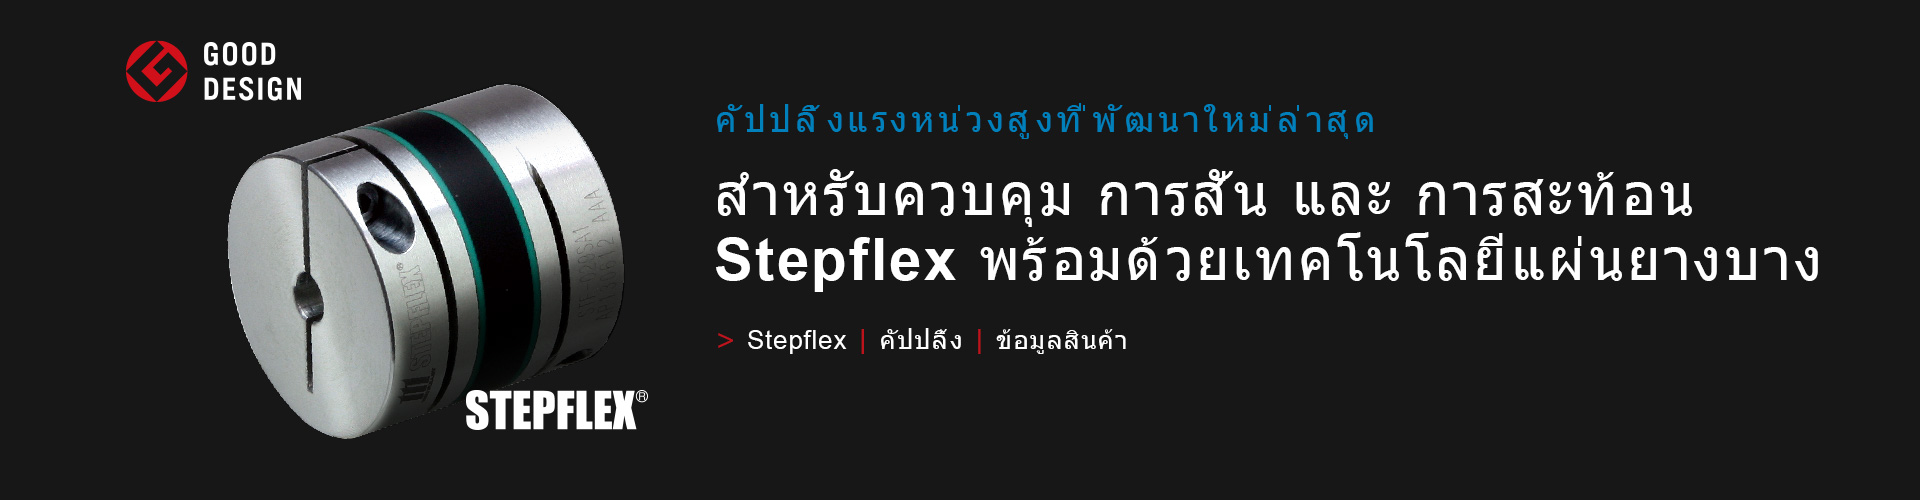 STEPFLEX/คัปปลิ้ง 